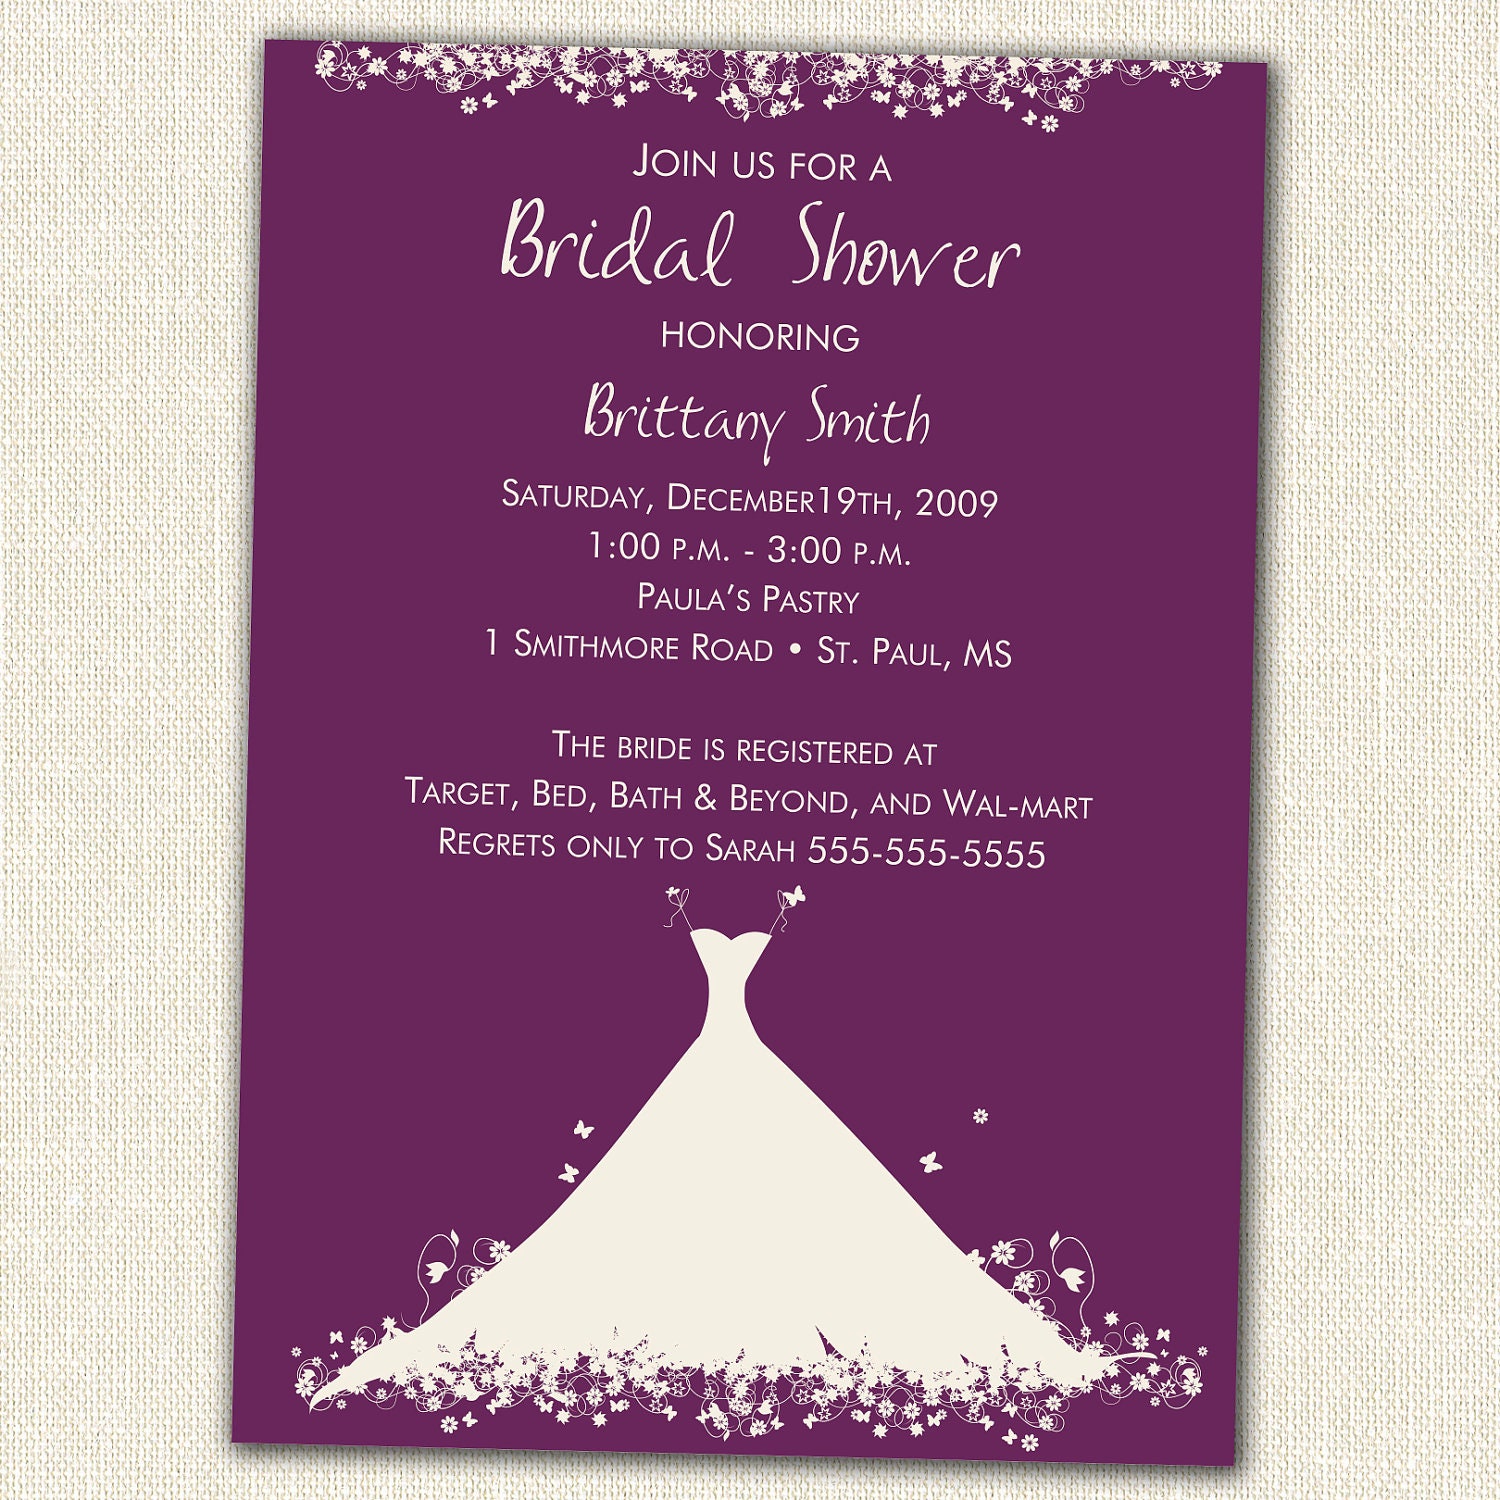 bridal shower invitation clipart - photo #42